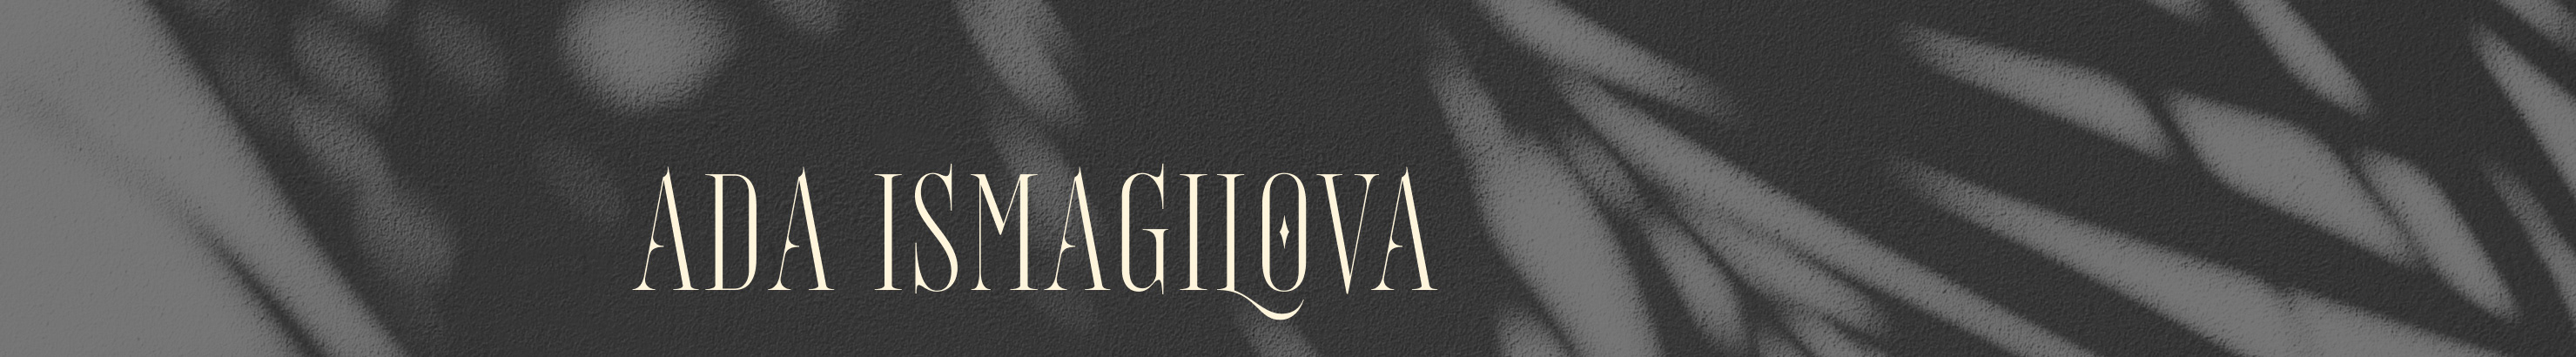 Ada Ismagilova's profile banner